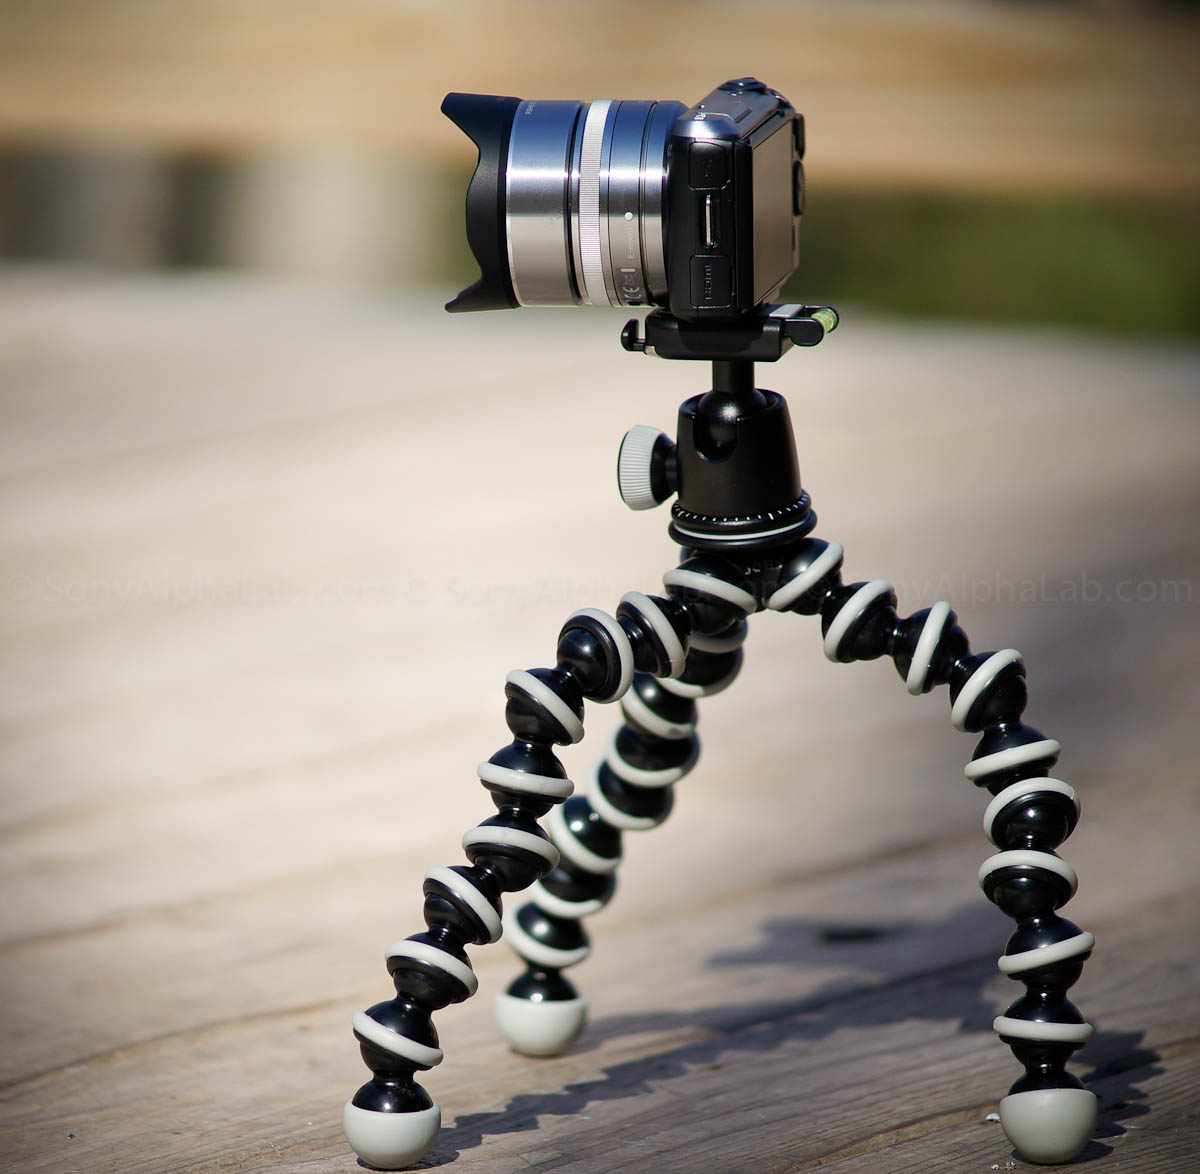 Joby Gorrillapod SLR-Zoom w/ Ballhead and Nex Camera and Lens